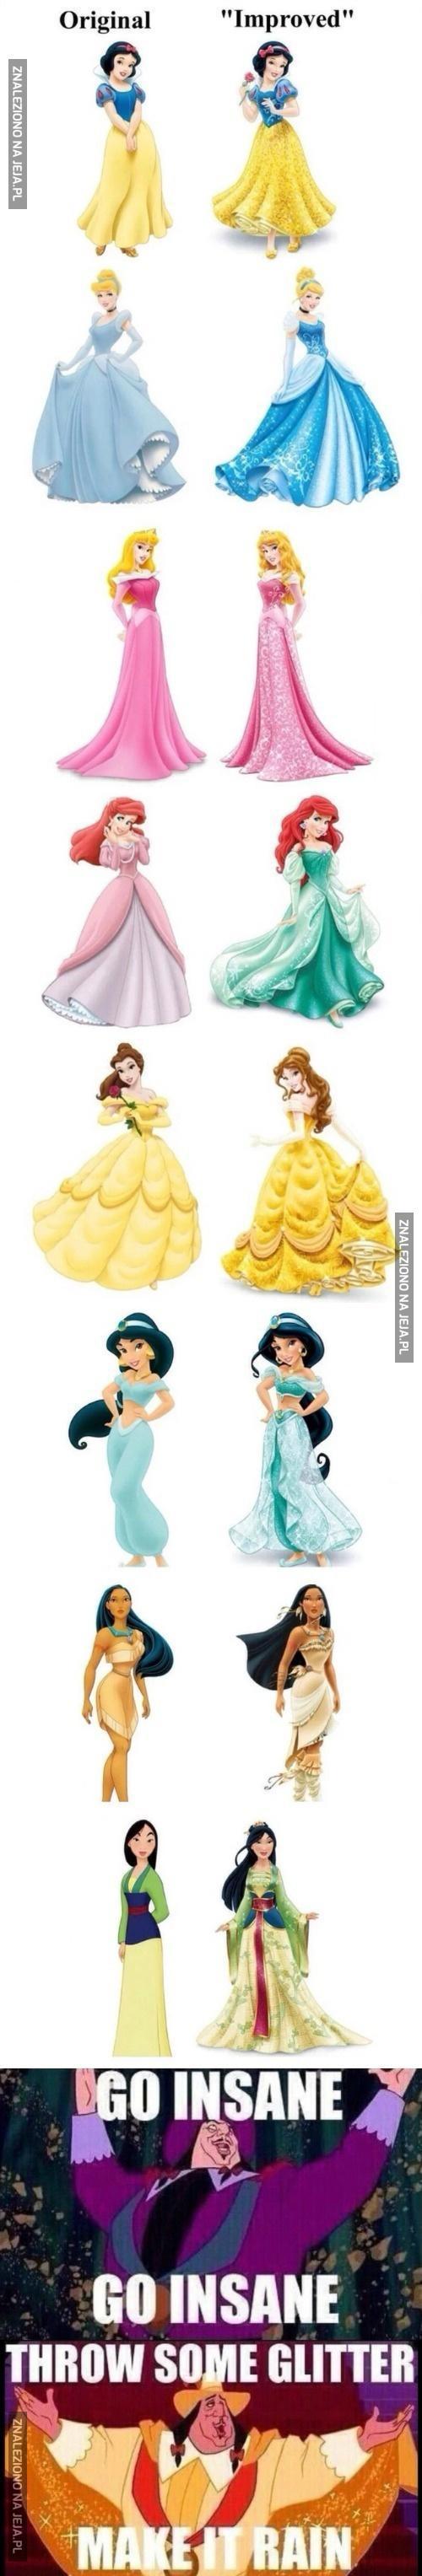 Księżniczki Disneya w "ulepszonych" sukienkach